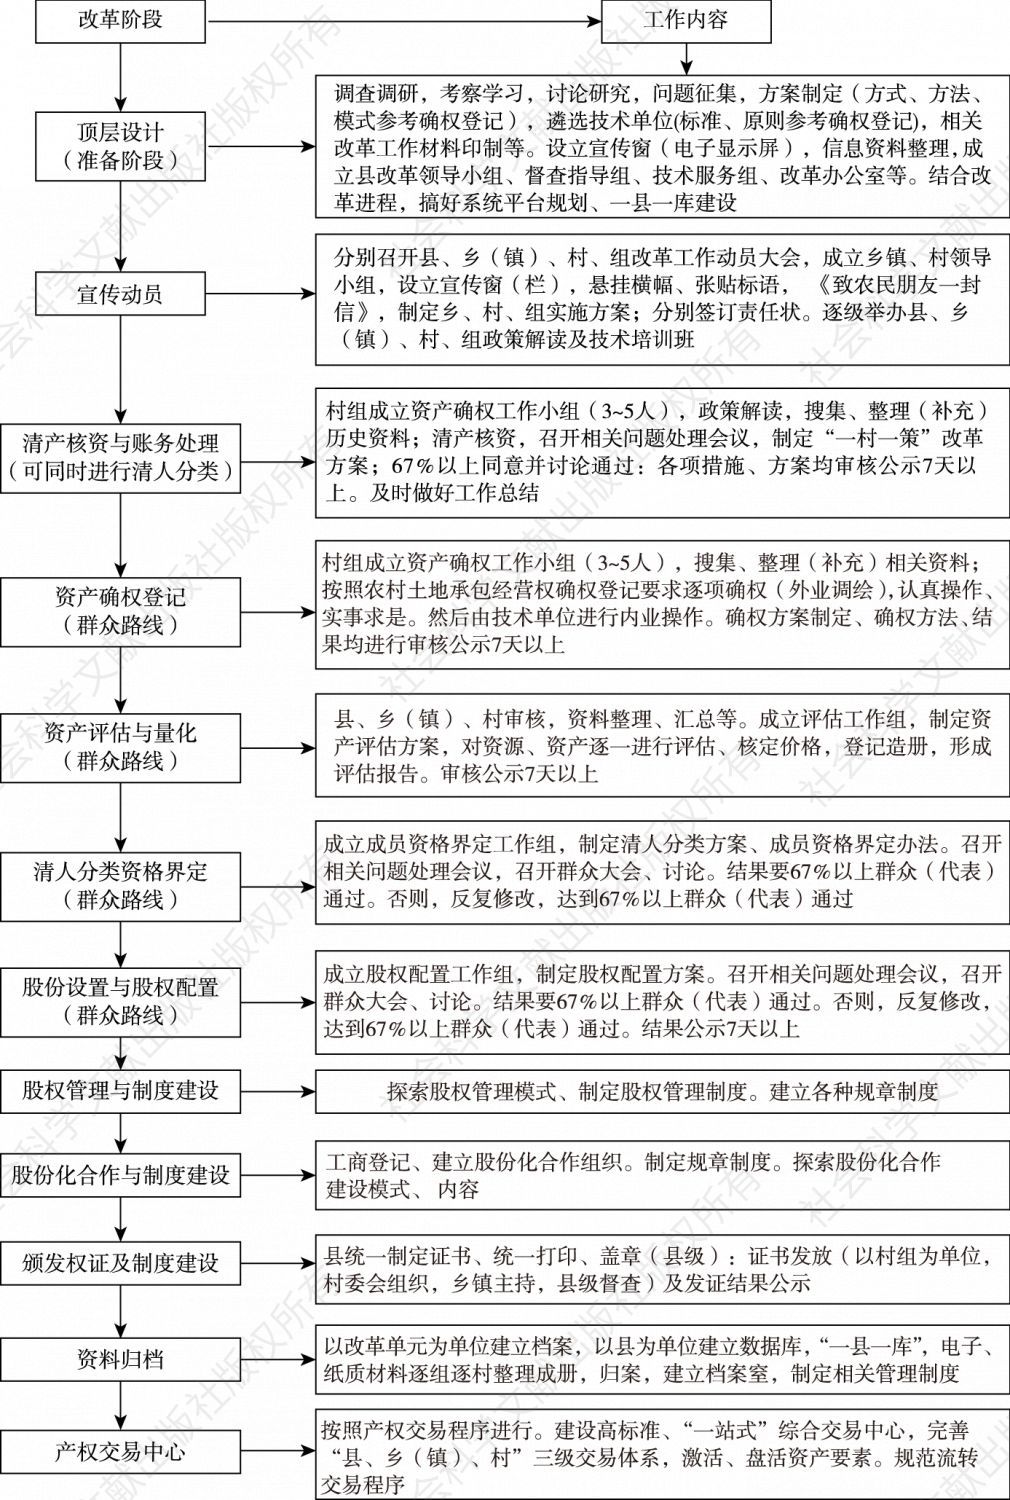 图1 余江县农村集体产权制度改革顶层设计